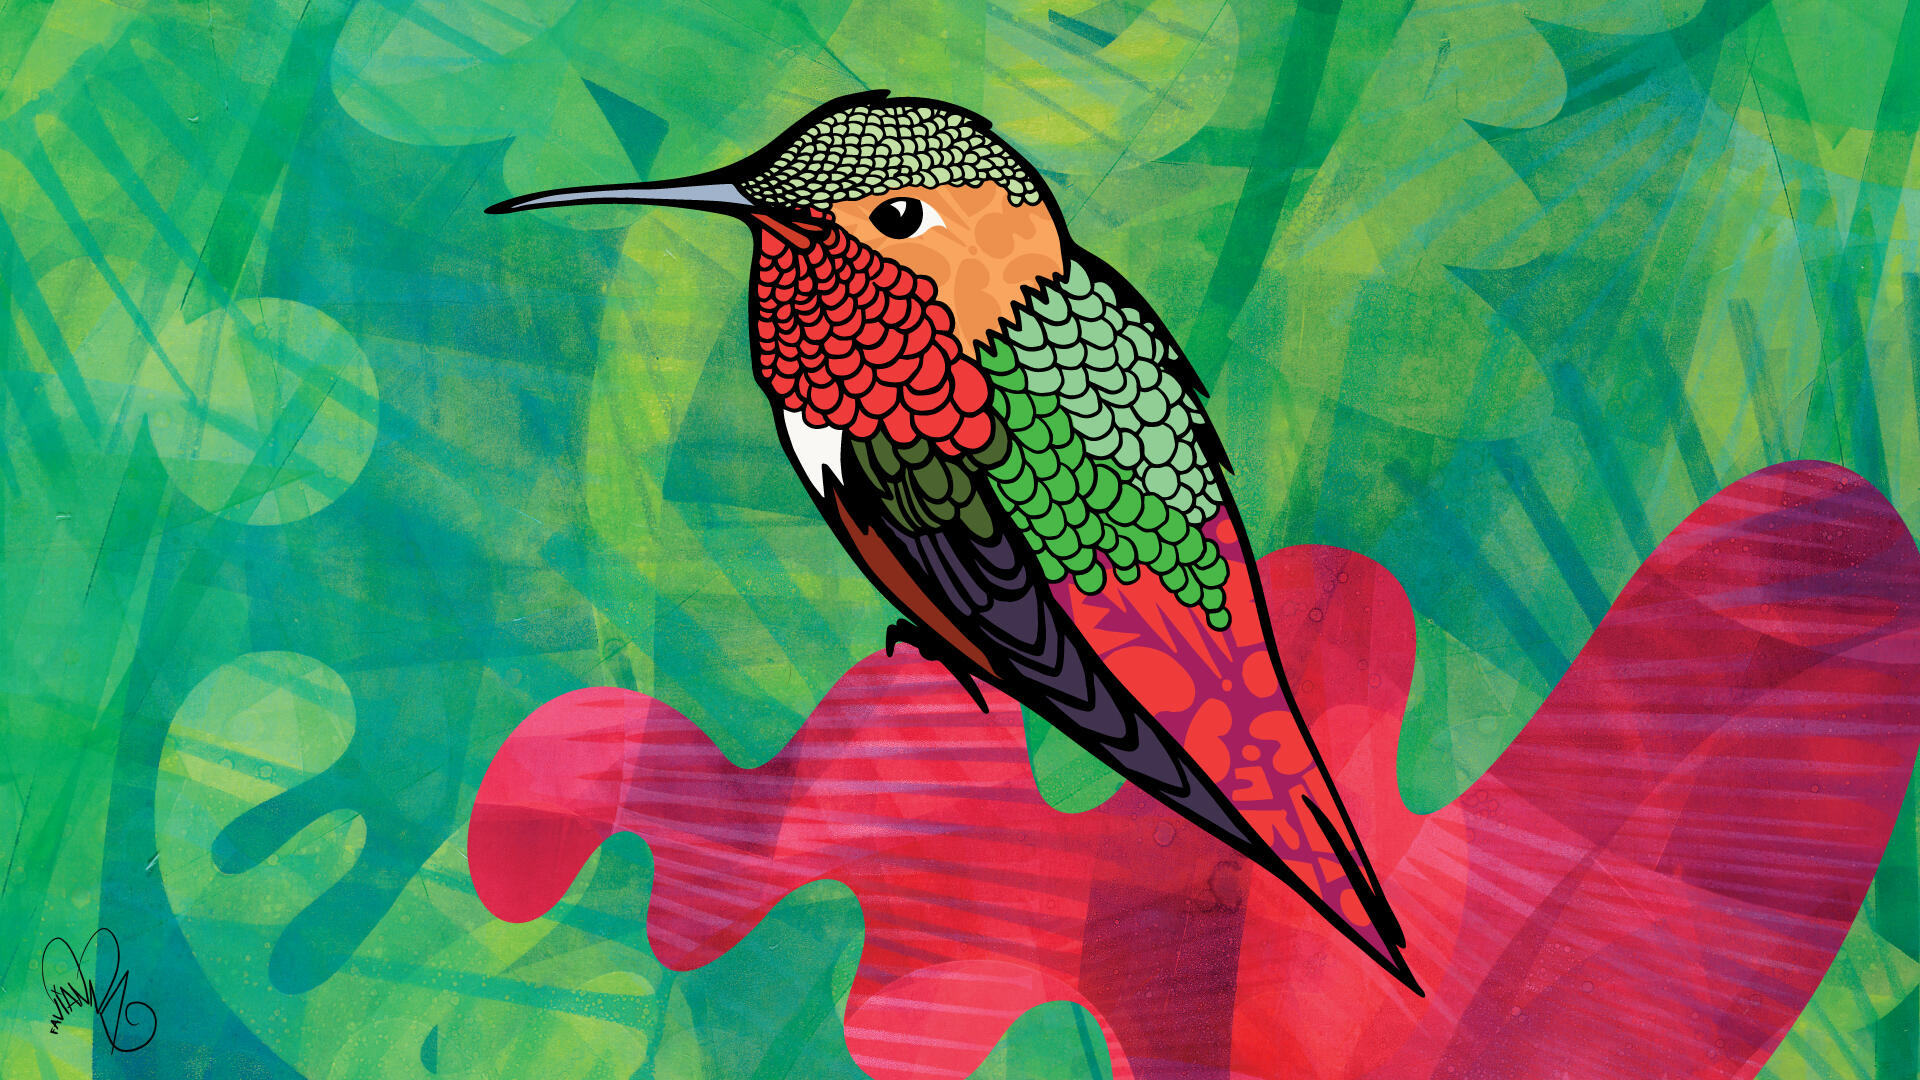 Artwork of an Anna's hummingbird from artist Favianna Rodriguez